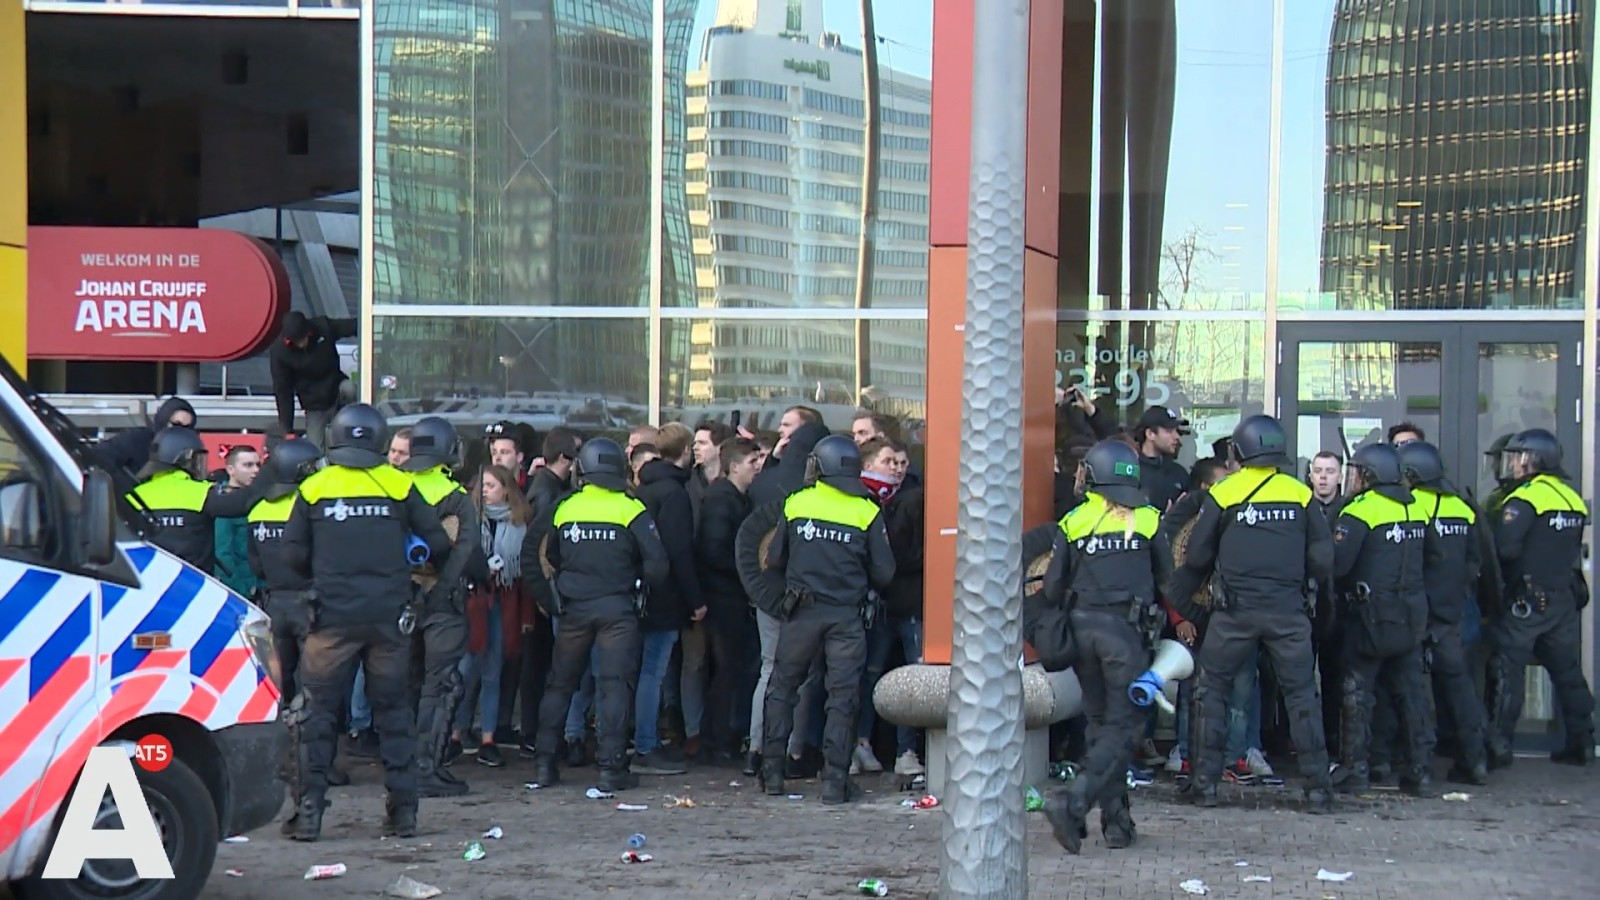 mobiele eenheid politie arenaboulevard rellen juventus